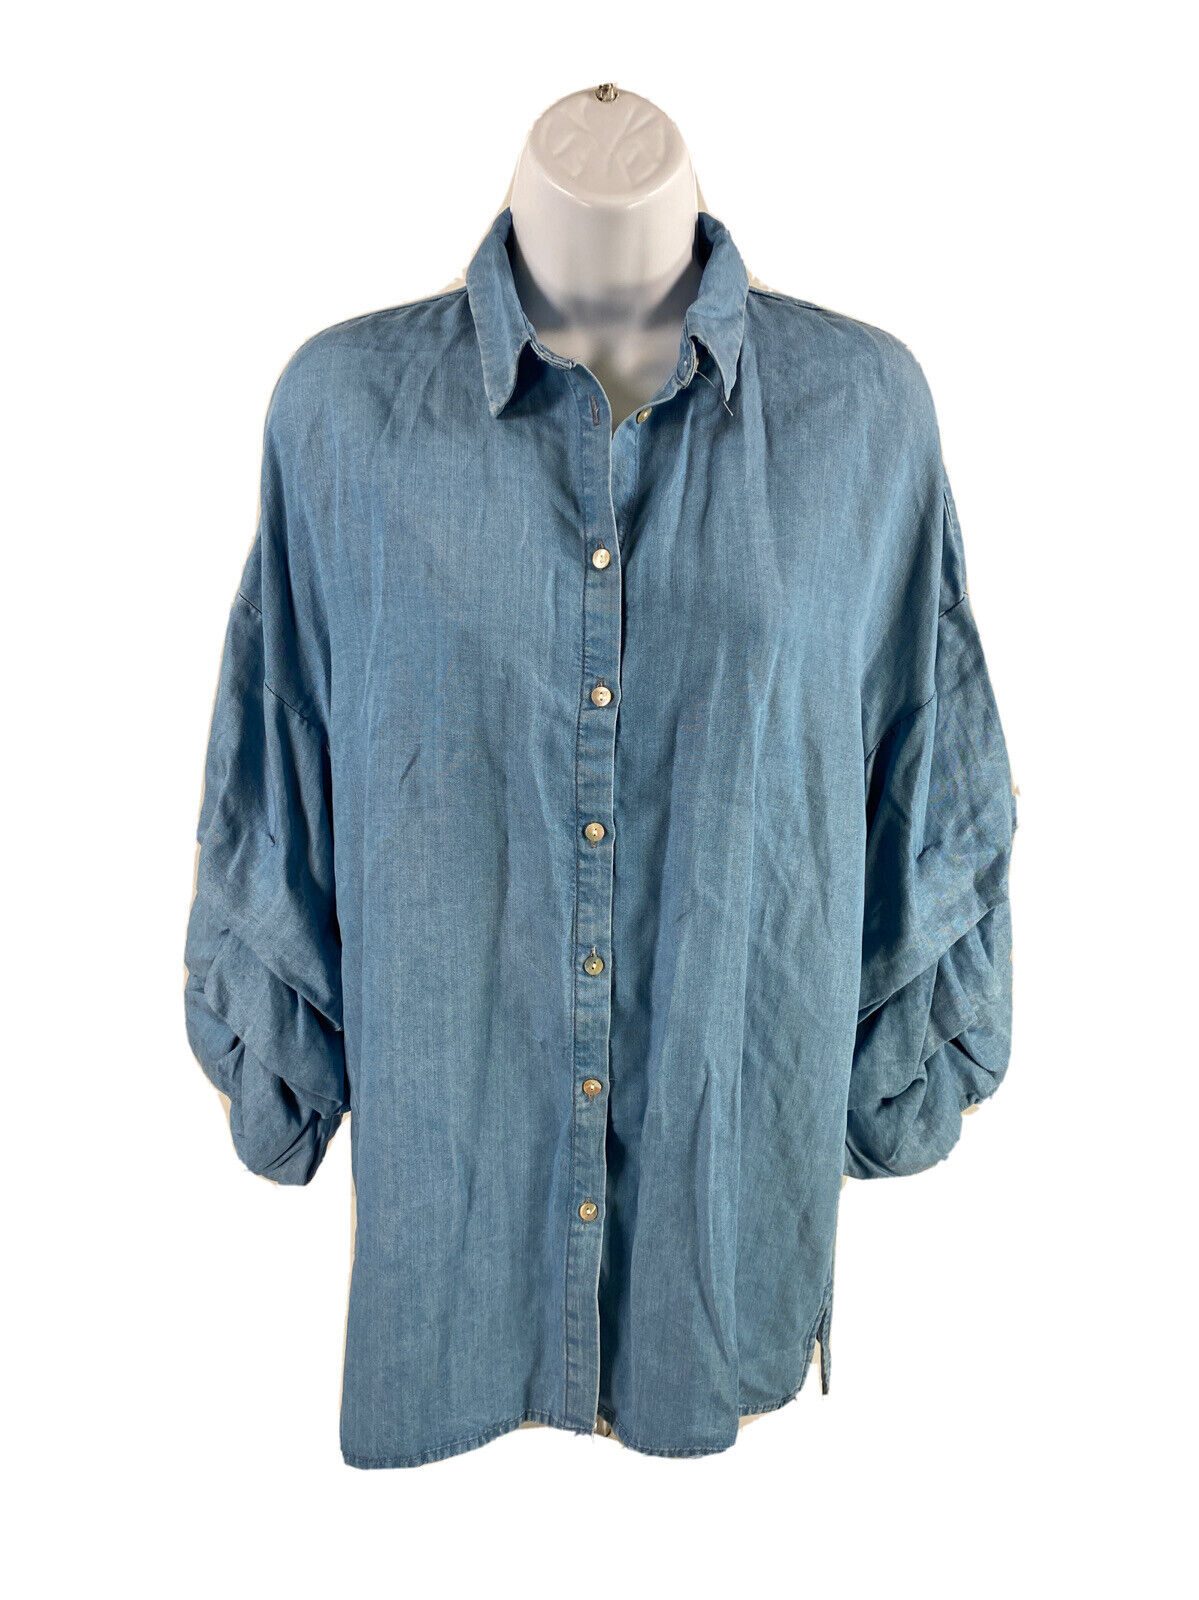 NEW Zara Women's Blue The Butterfly 3/4 Sleeve Button Up Shirt - S